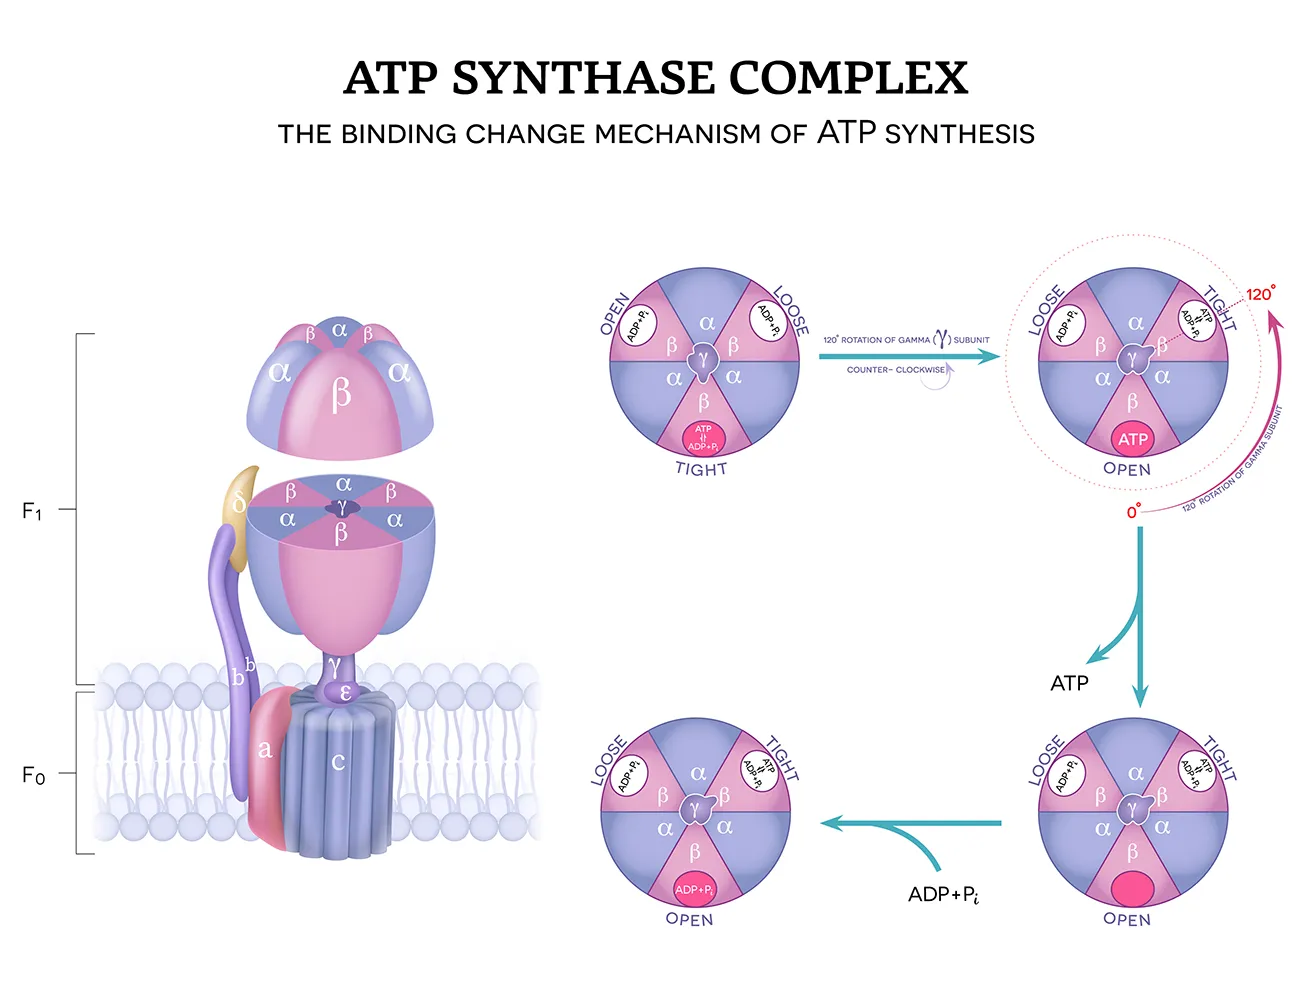 ATP 합성 효소 복합체 구조와 결합 변화 메커니즘